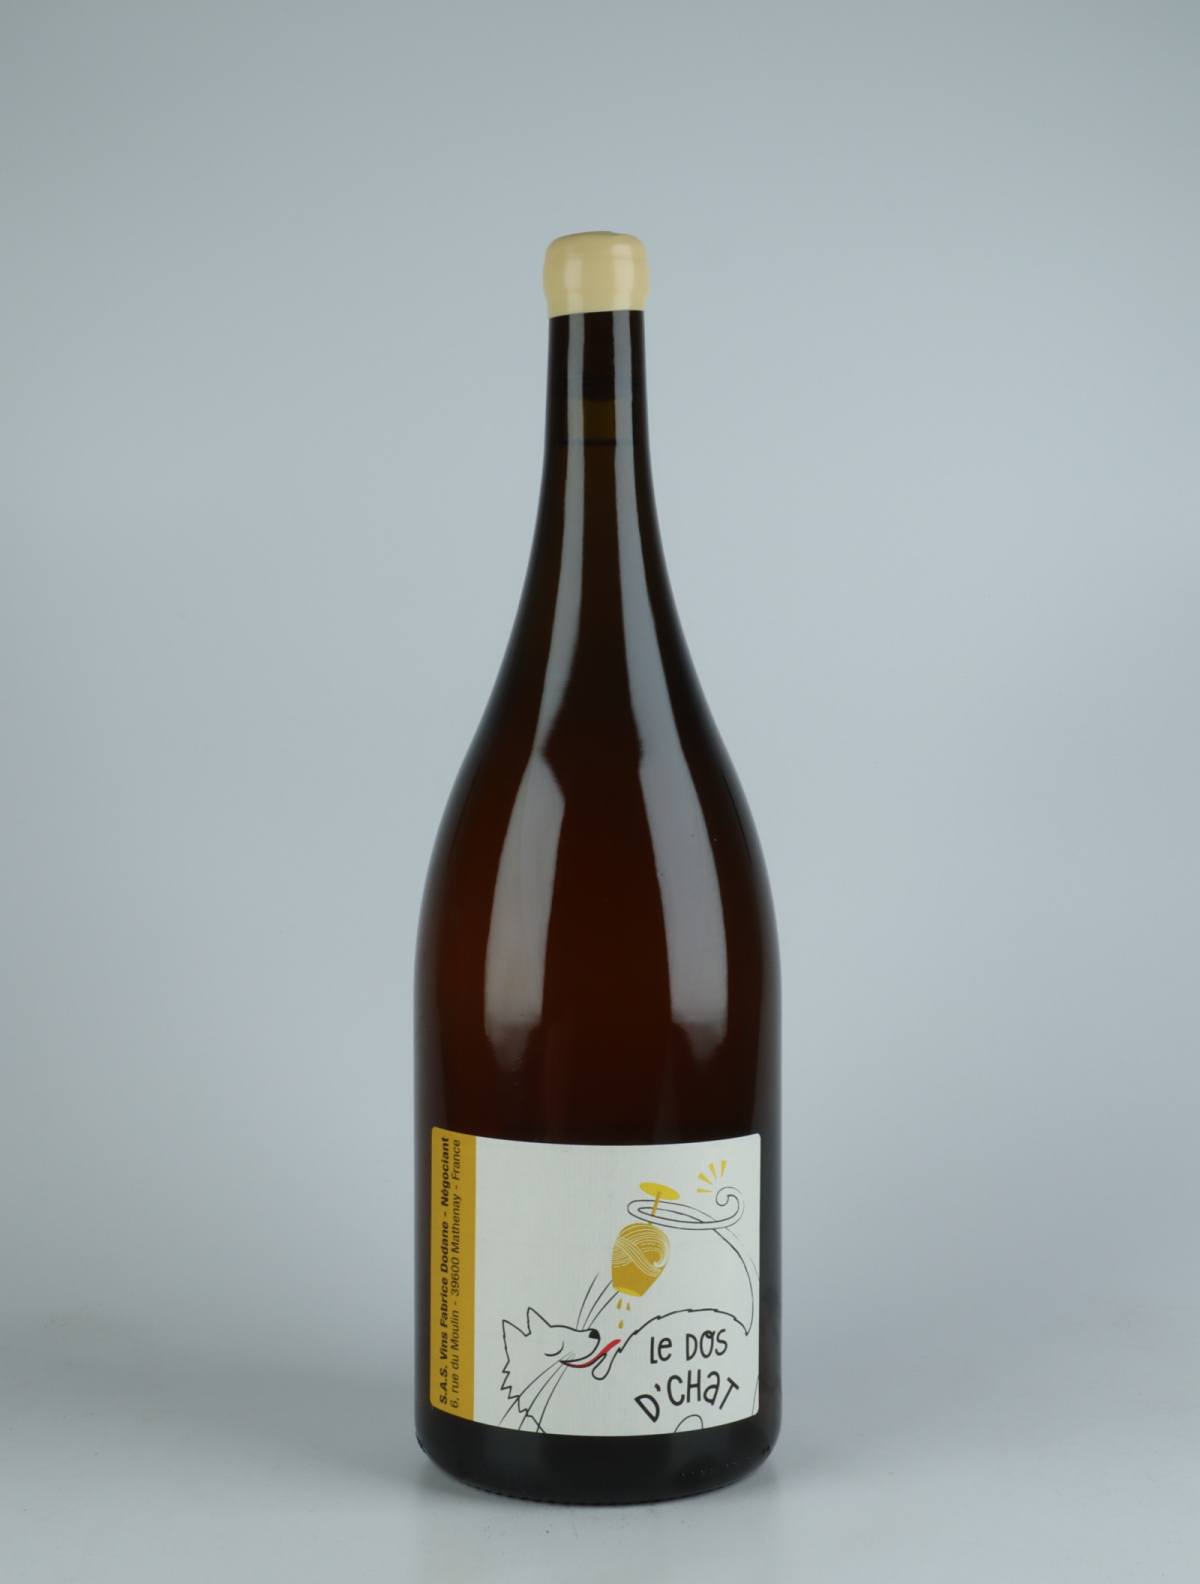 En flaske 2020 Chardonnay Les Corvées Hvidvin fra Fabrice Dodane, Jura i Frankrig